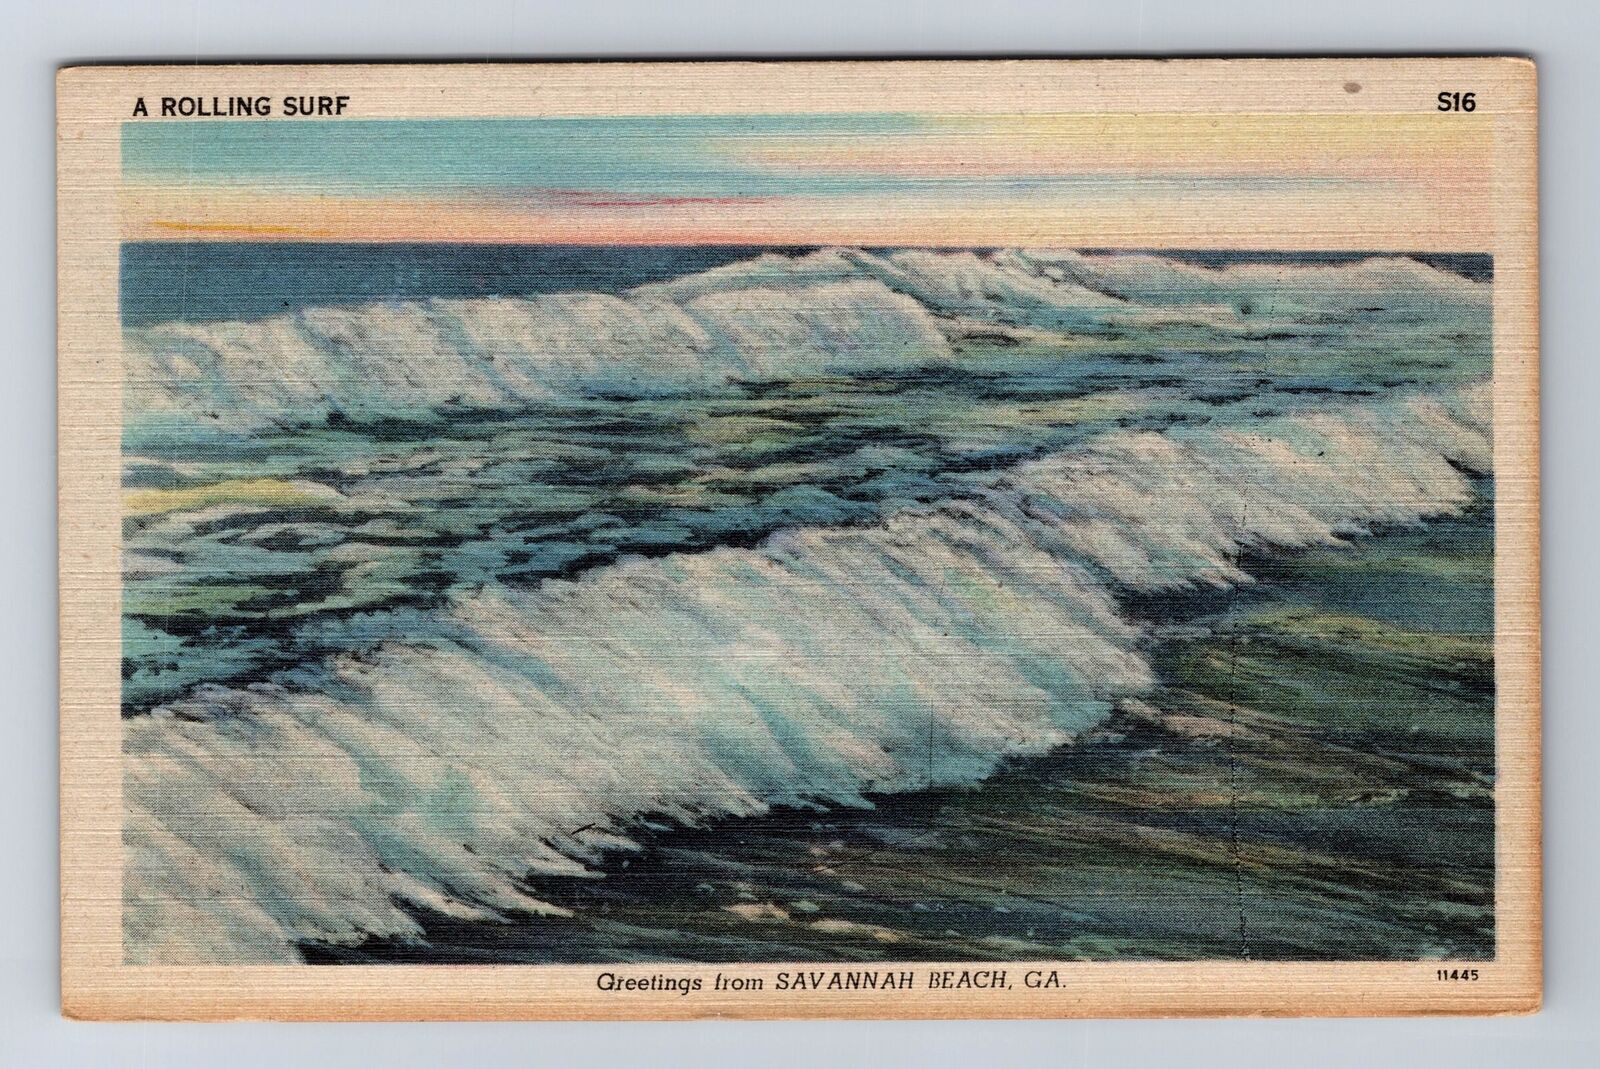 Savannah Beach CA-California, General Greetings, Rolling Surf Vintage Postcard